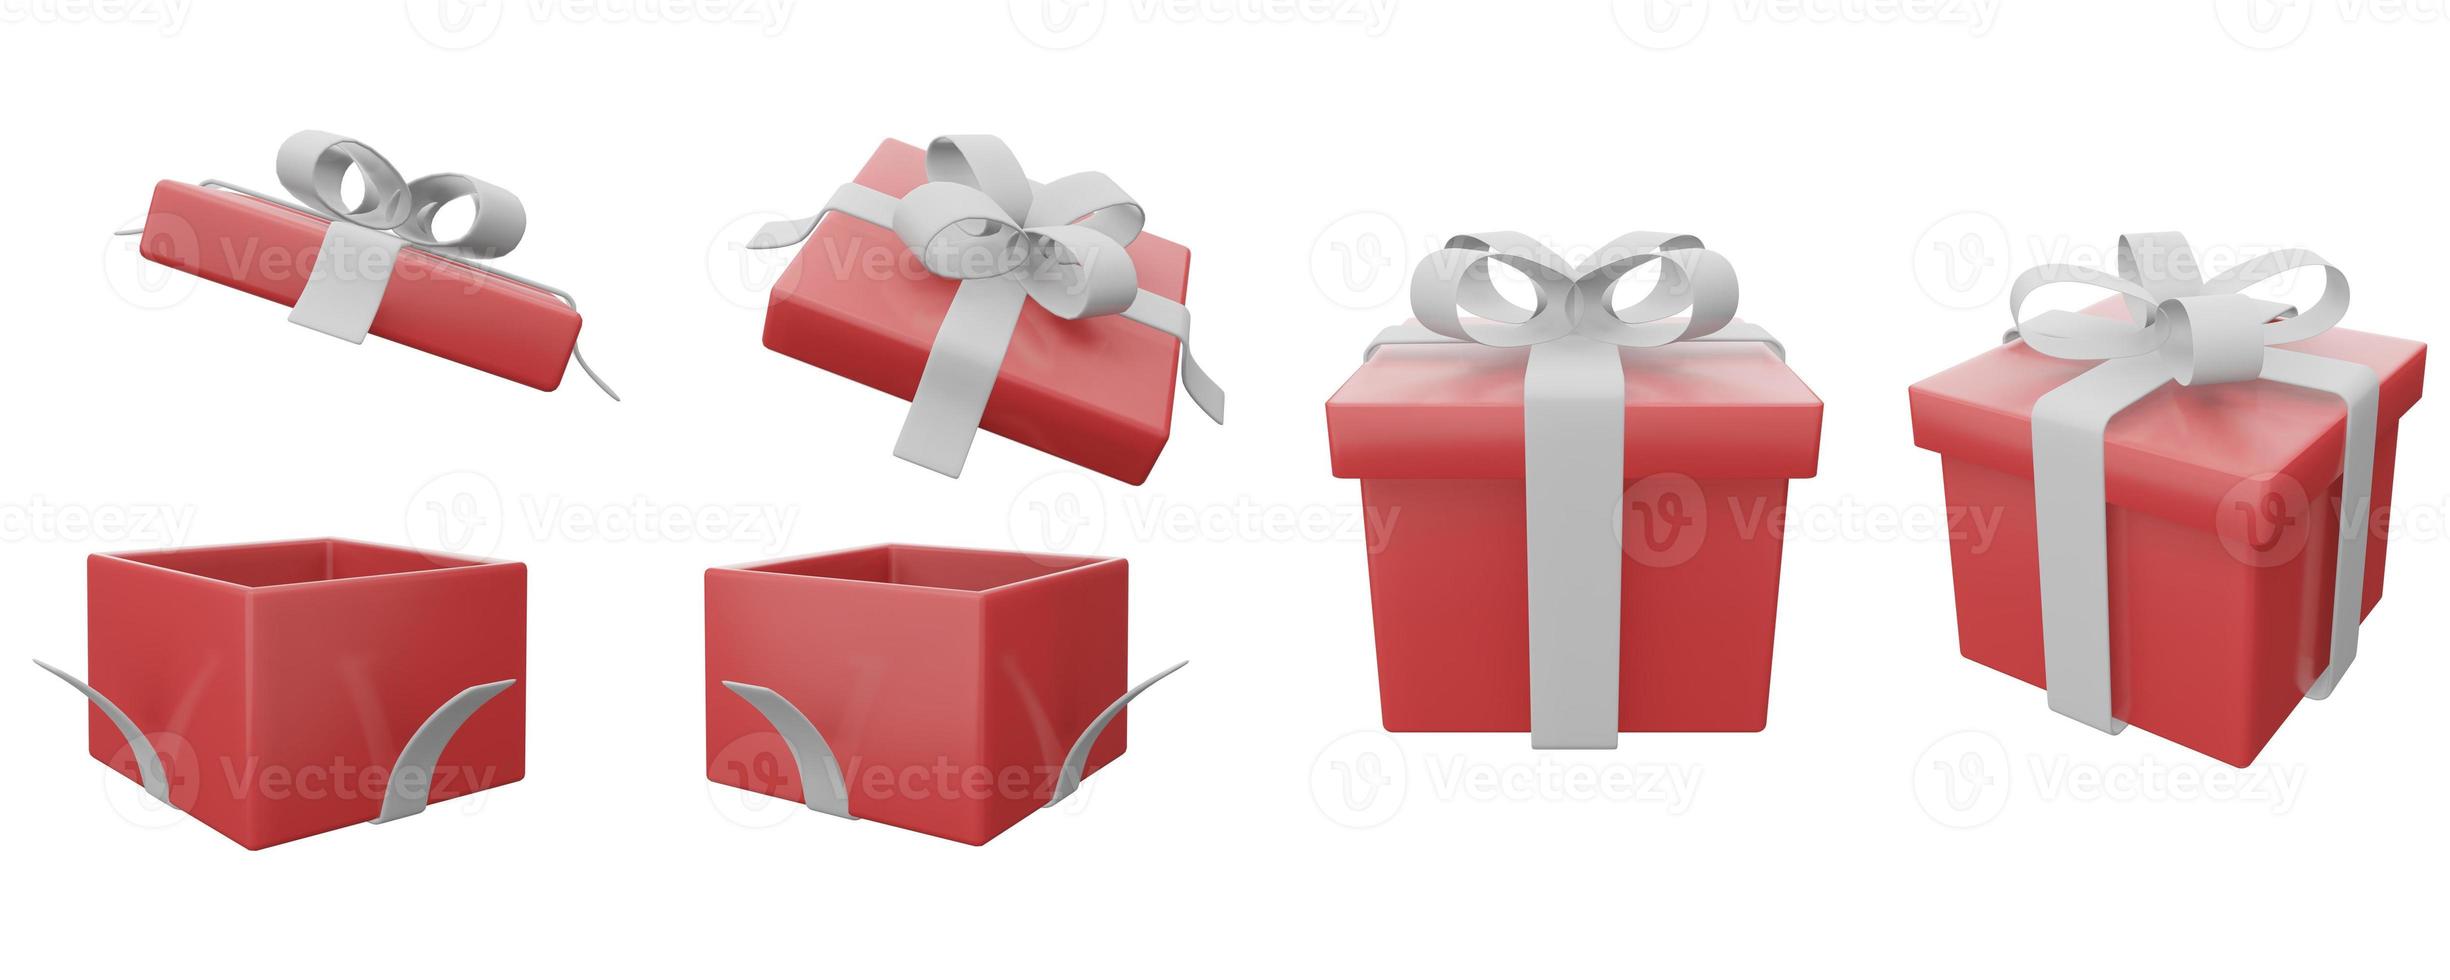 conjunto de caja de regalo roja cinta blanca sobre fondo blanco. ilustración 3d render caja sorpresa. icono de vector realista para banners de boda, presentación de cumpleaños o celebración foto